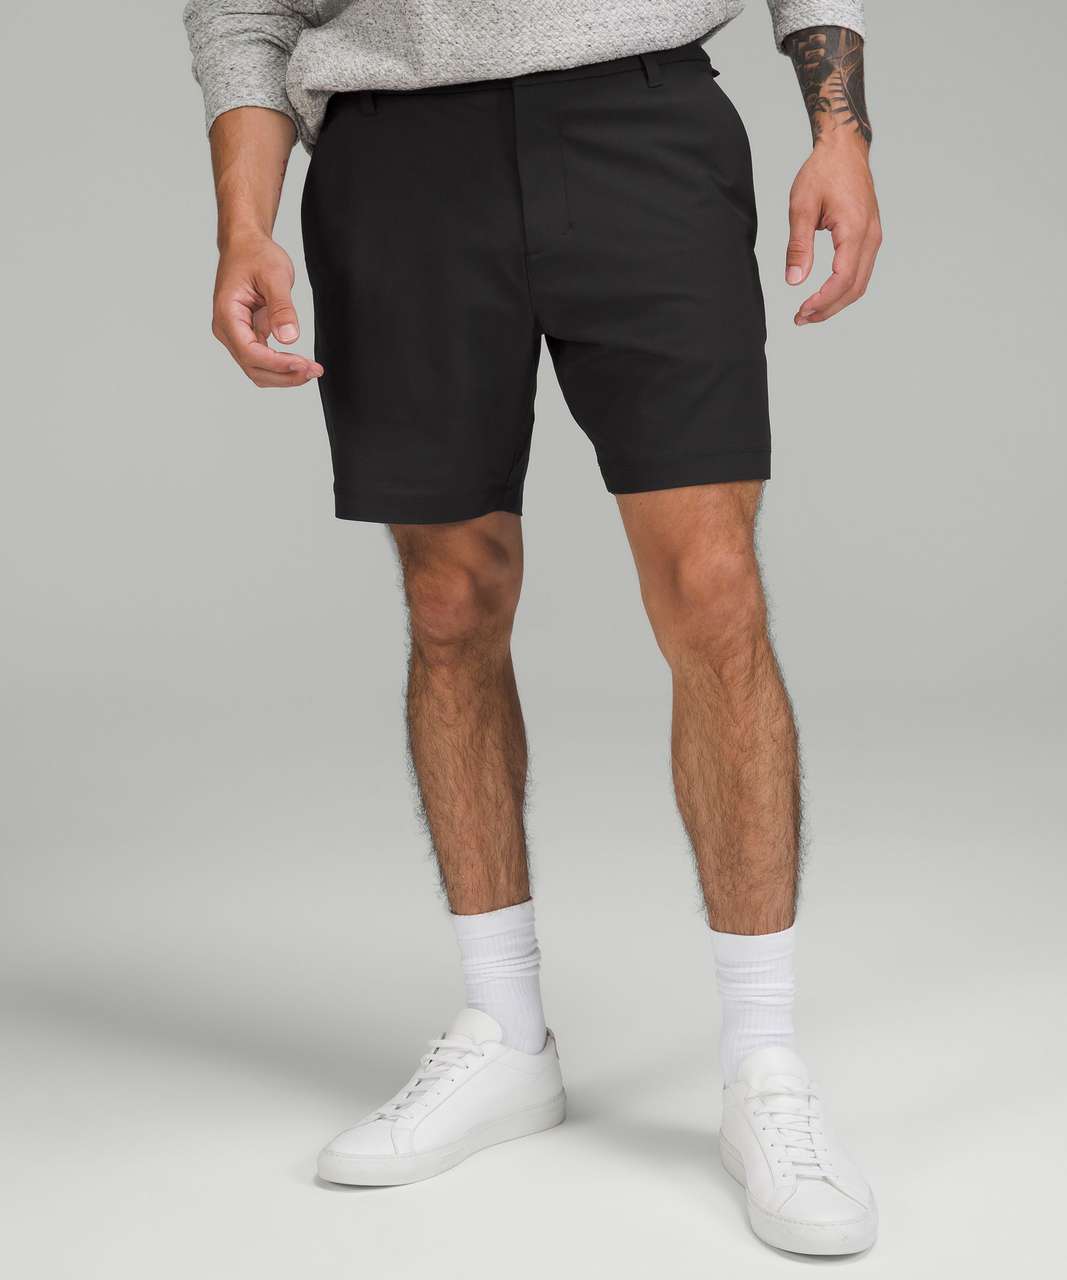 Black Commission 7” jersey shorts, Lululemon